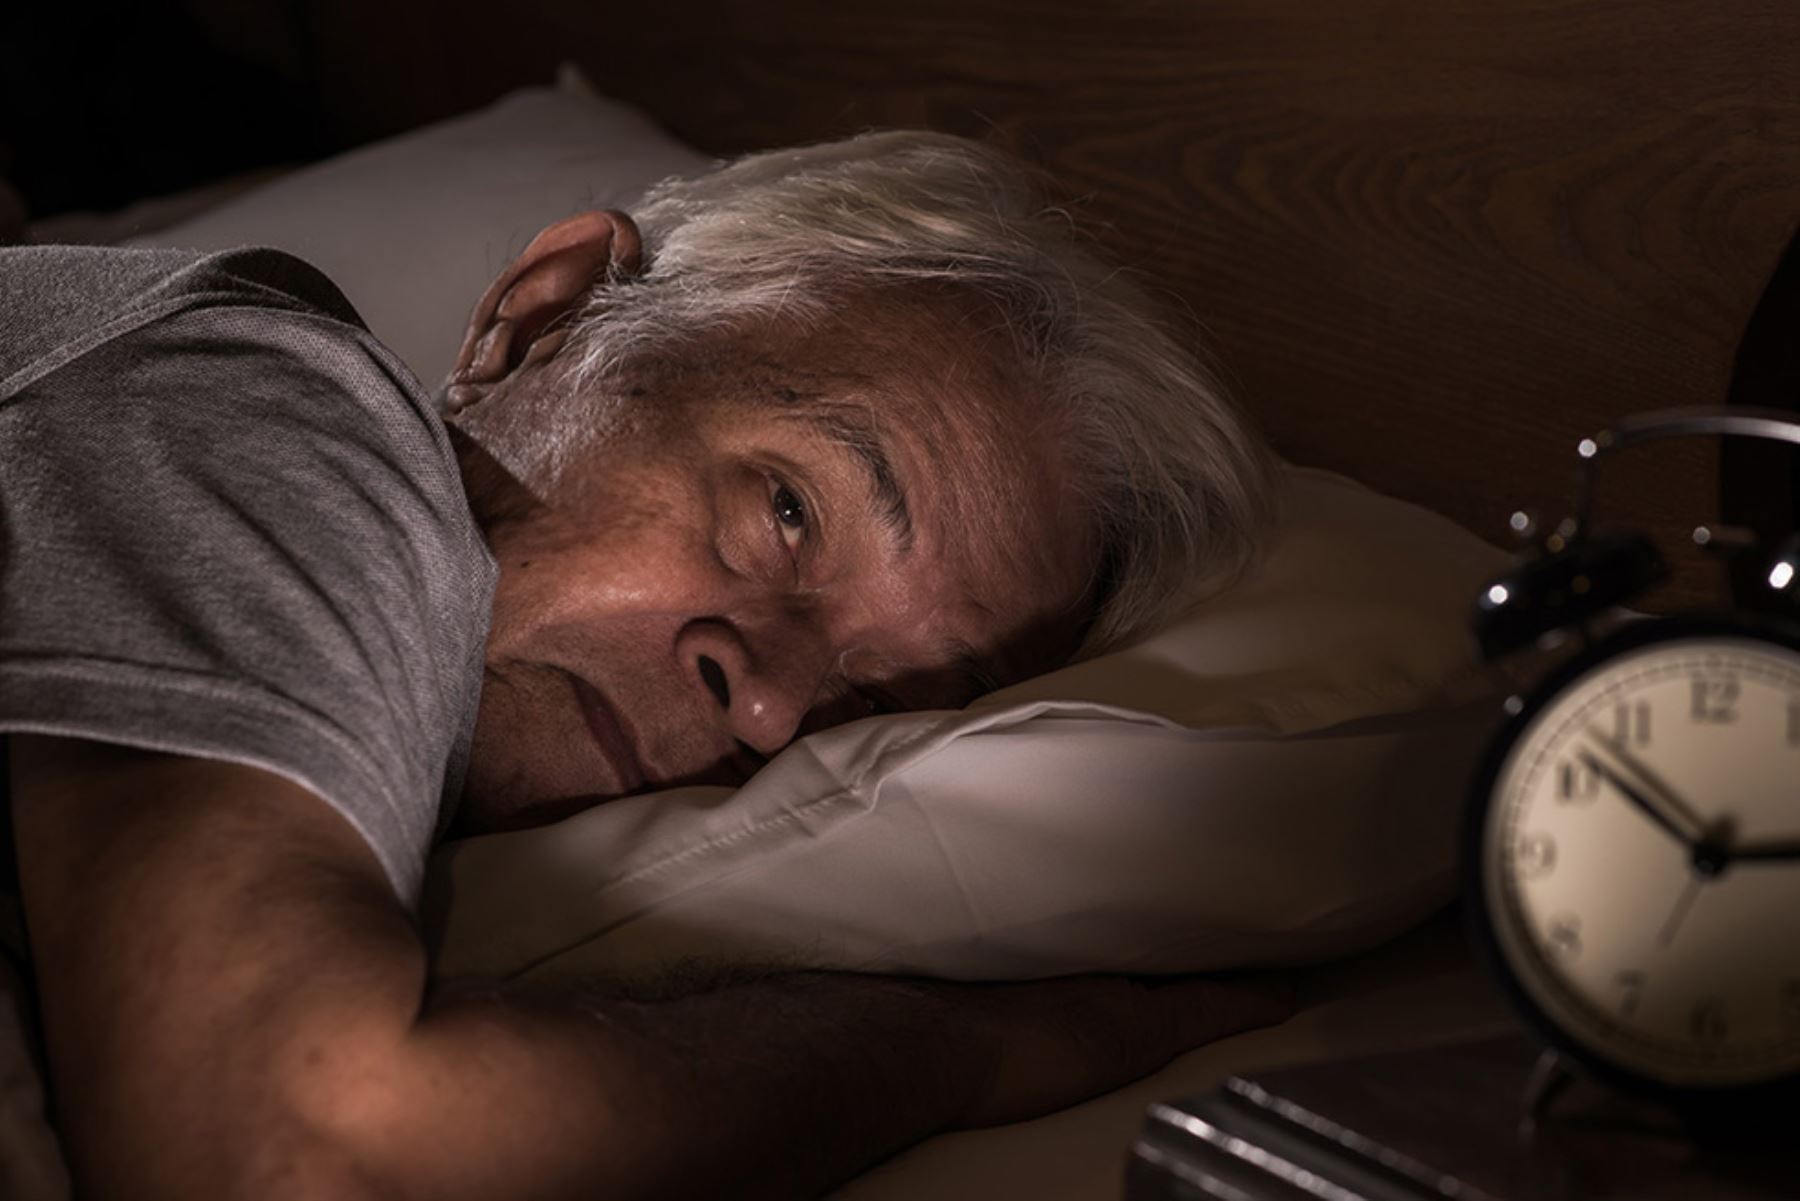 La persona adulta mayor duerme menos y hace siesta porque su cerebro necesita ese tipo de reposición, explica especialista del Instituto Nacional de Salud Mental. Foto: ANDINA/ Internet